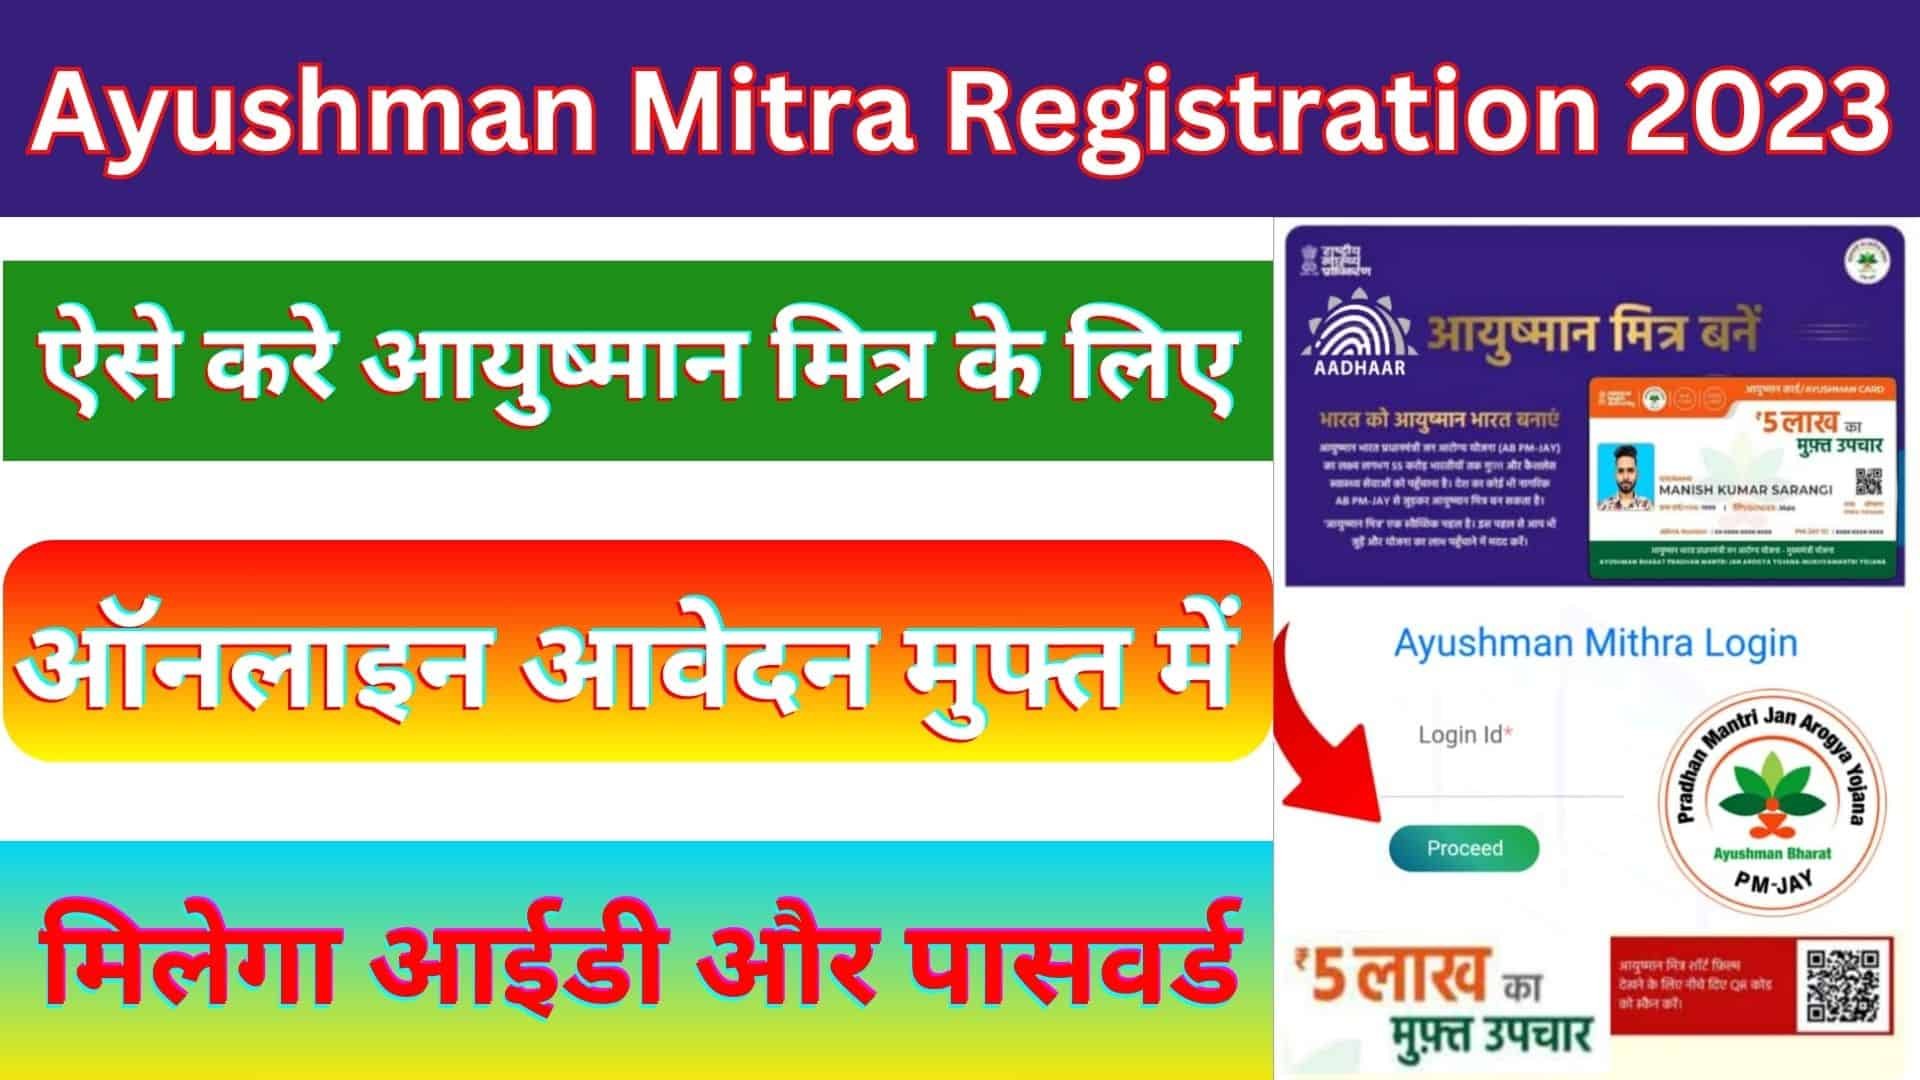 Ayushman Mitra Registration 2023 : ऐसे करे आयुष्मान मित्र के लिए ऑनलाइन आवेदन मुफ्त में मिलेगा आईडी और पासवर्ड